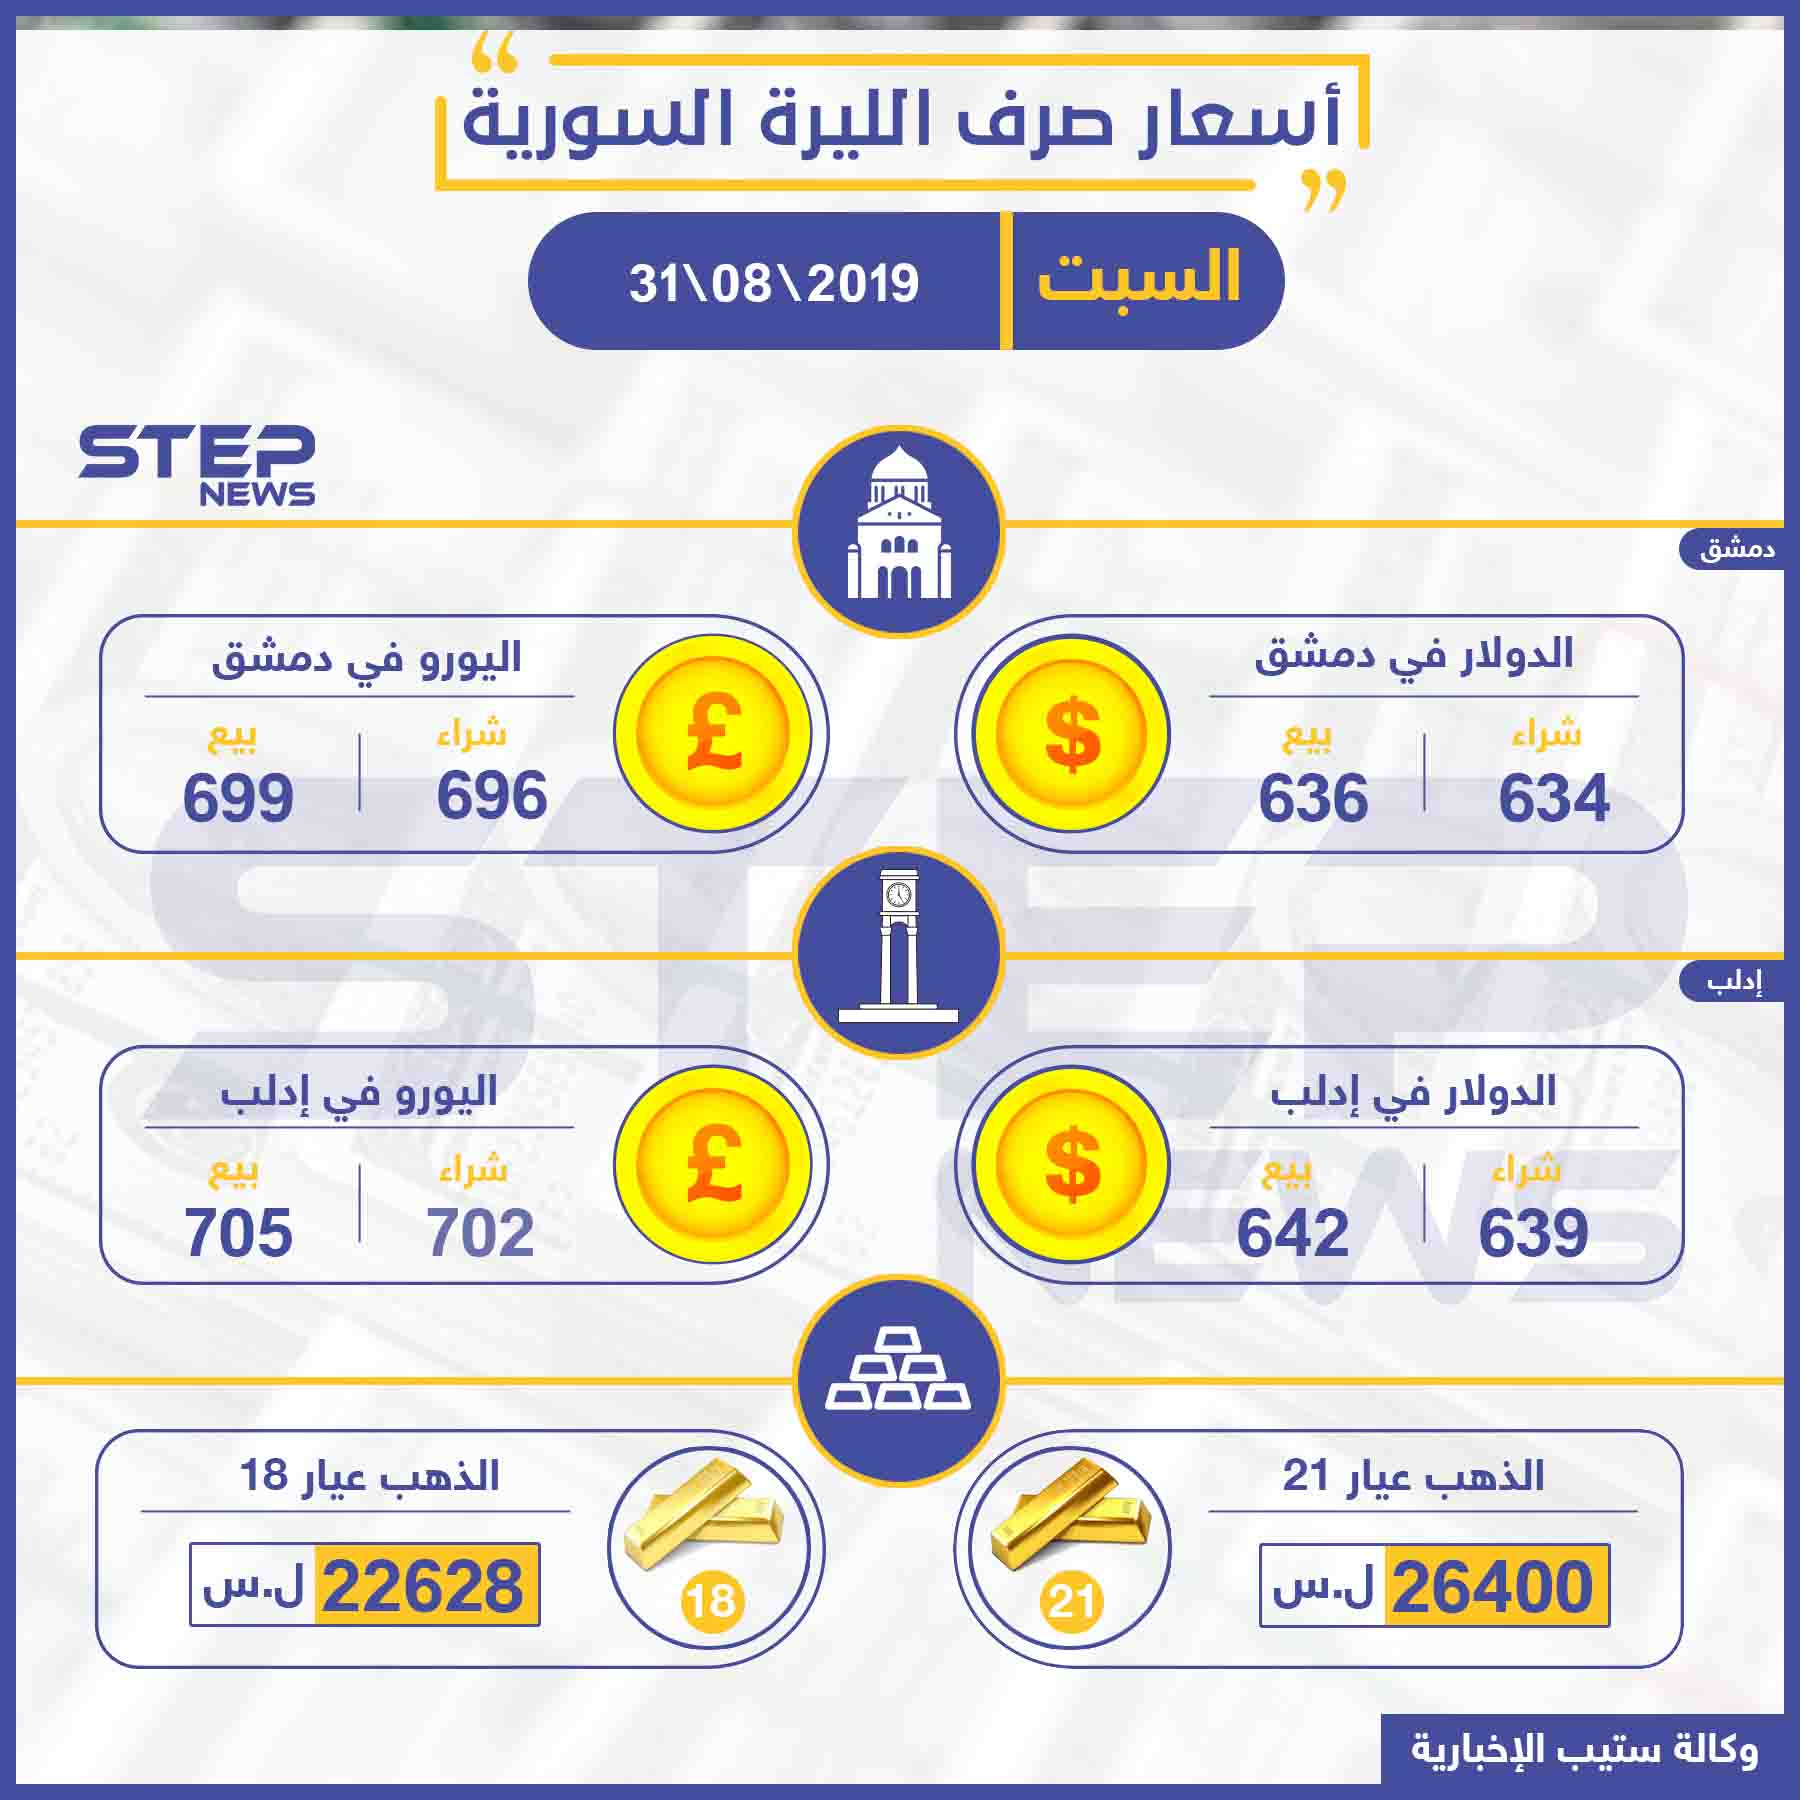 أسعار الذهب والعملات في سوريا اليوم 31 08 2019